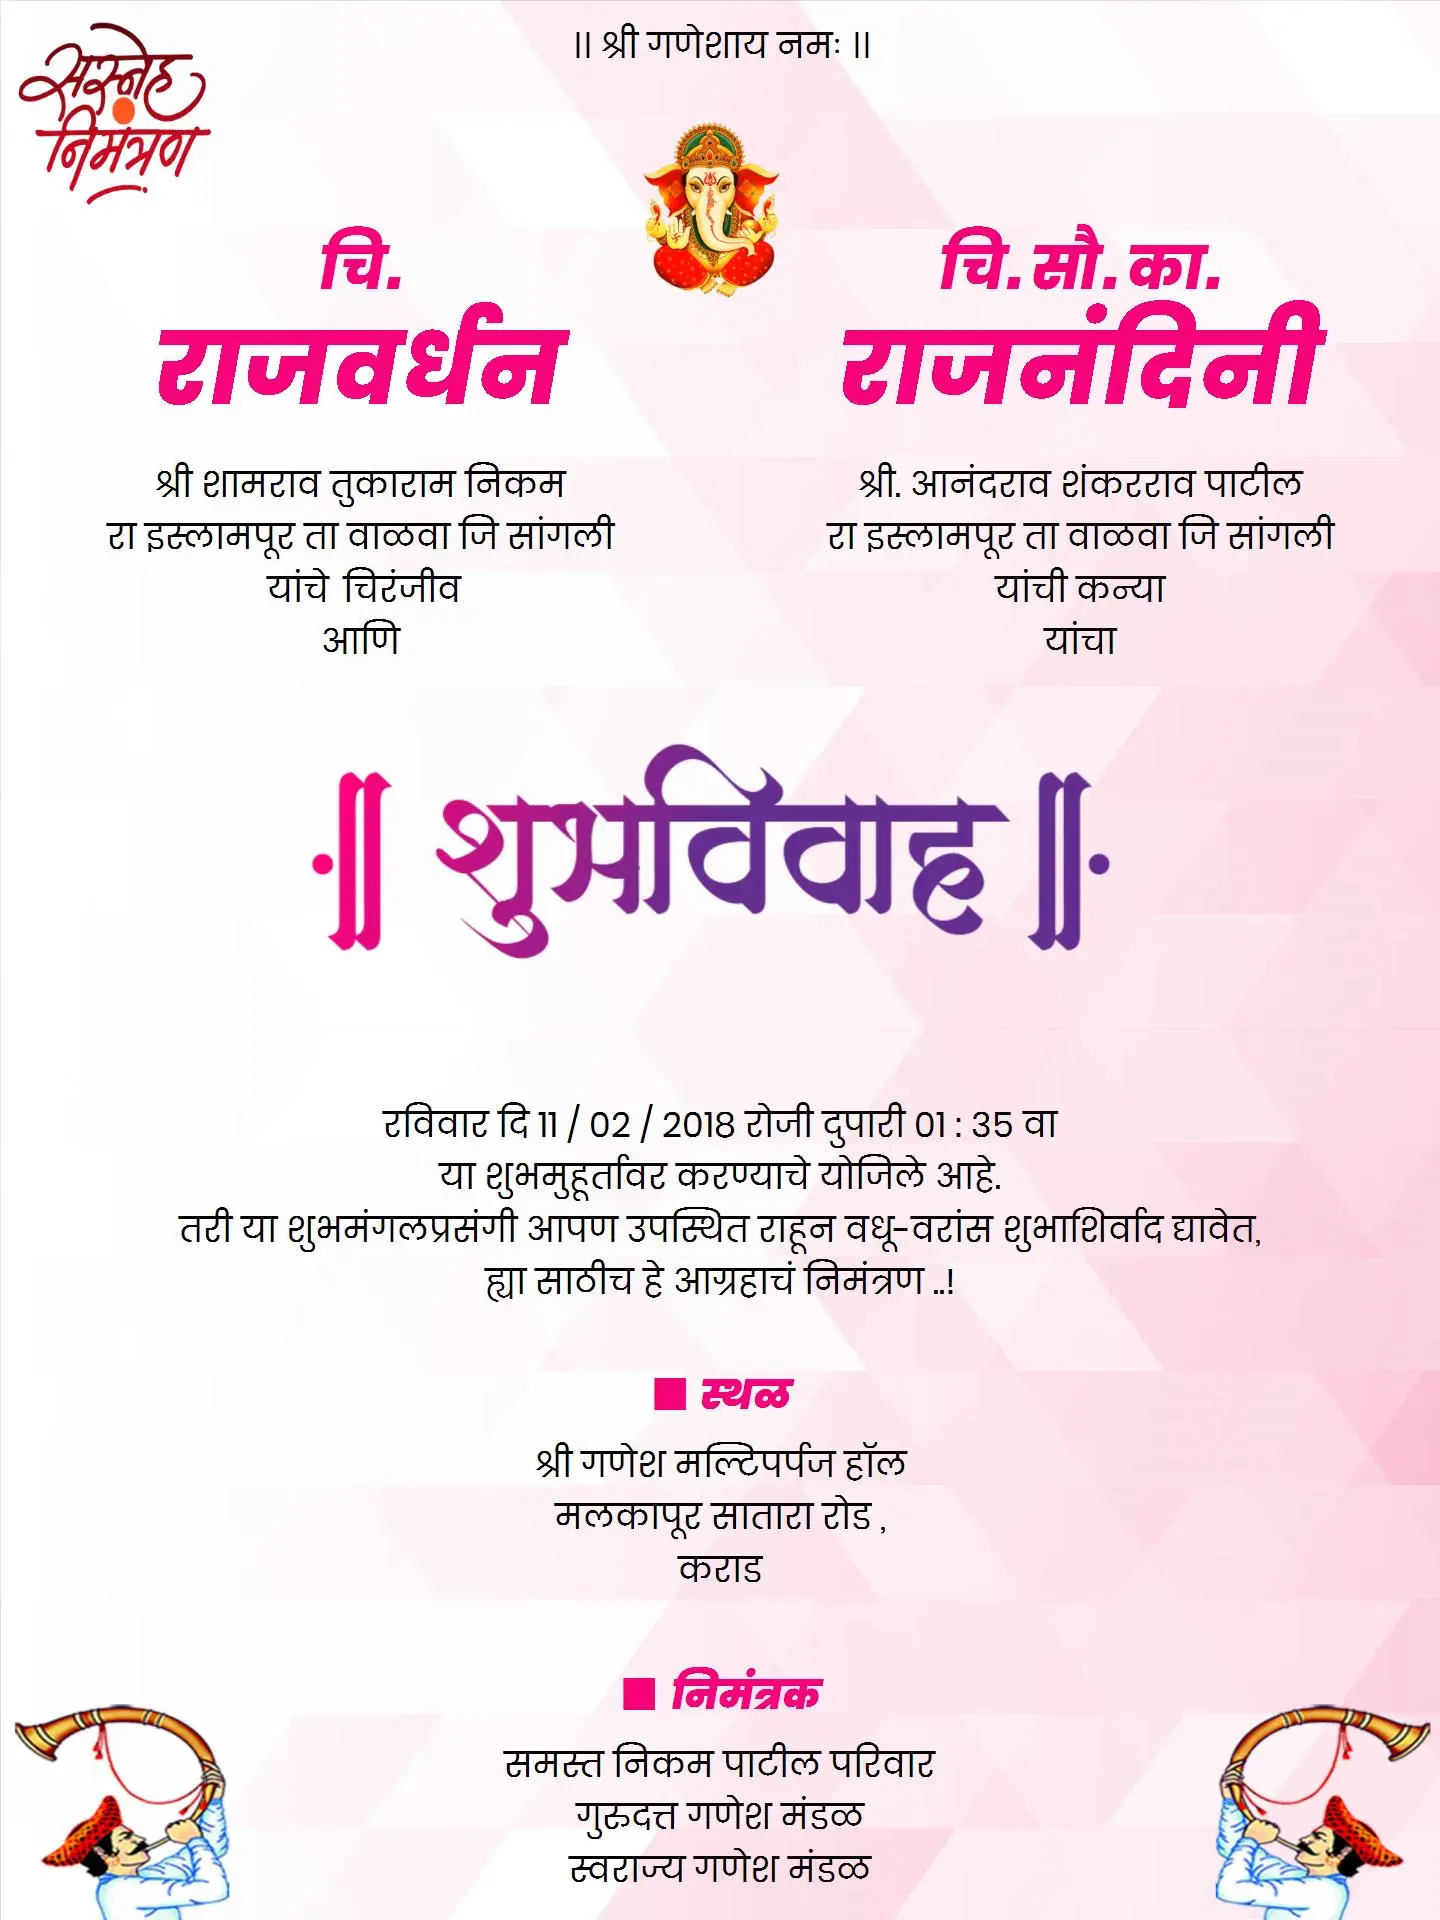 Wedding Invitation Card in Marathi